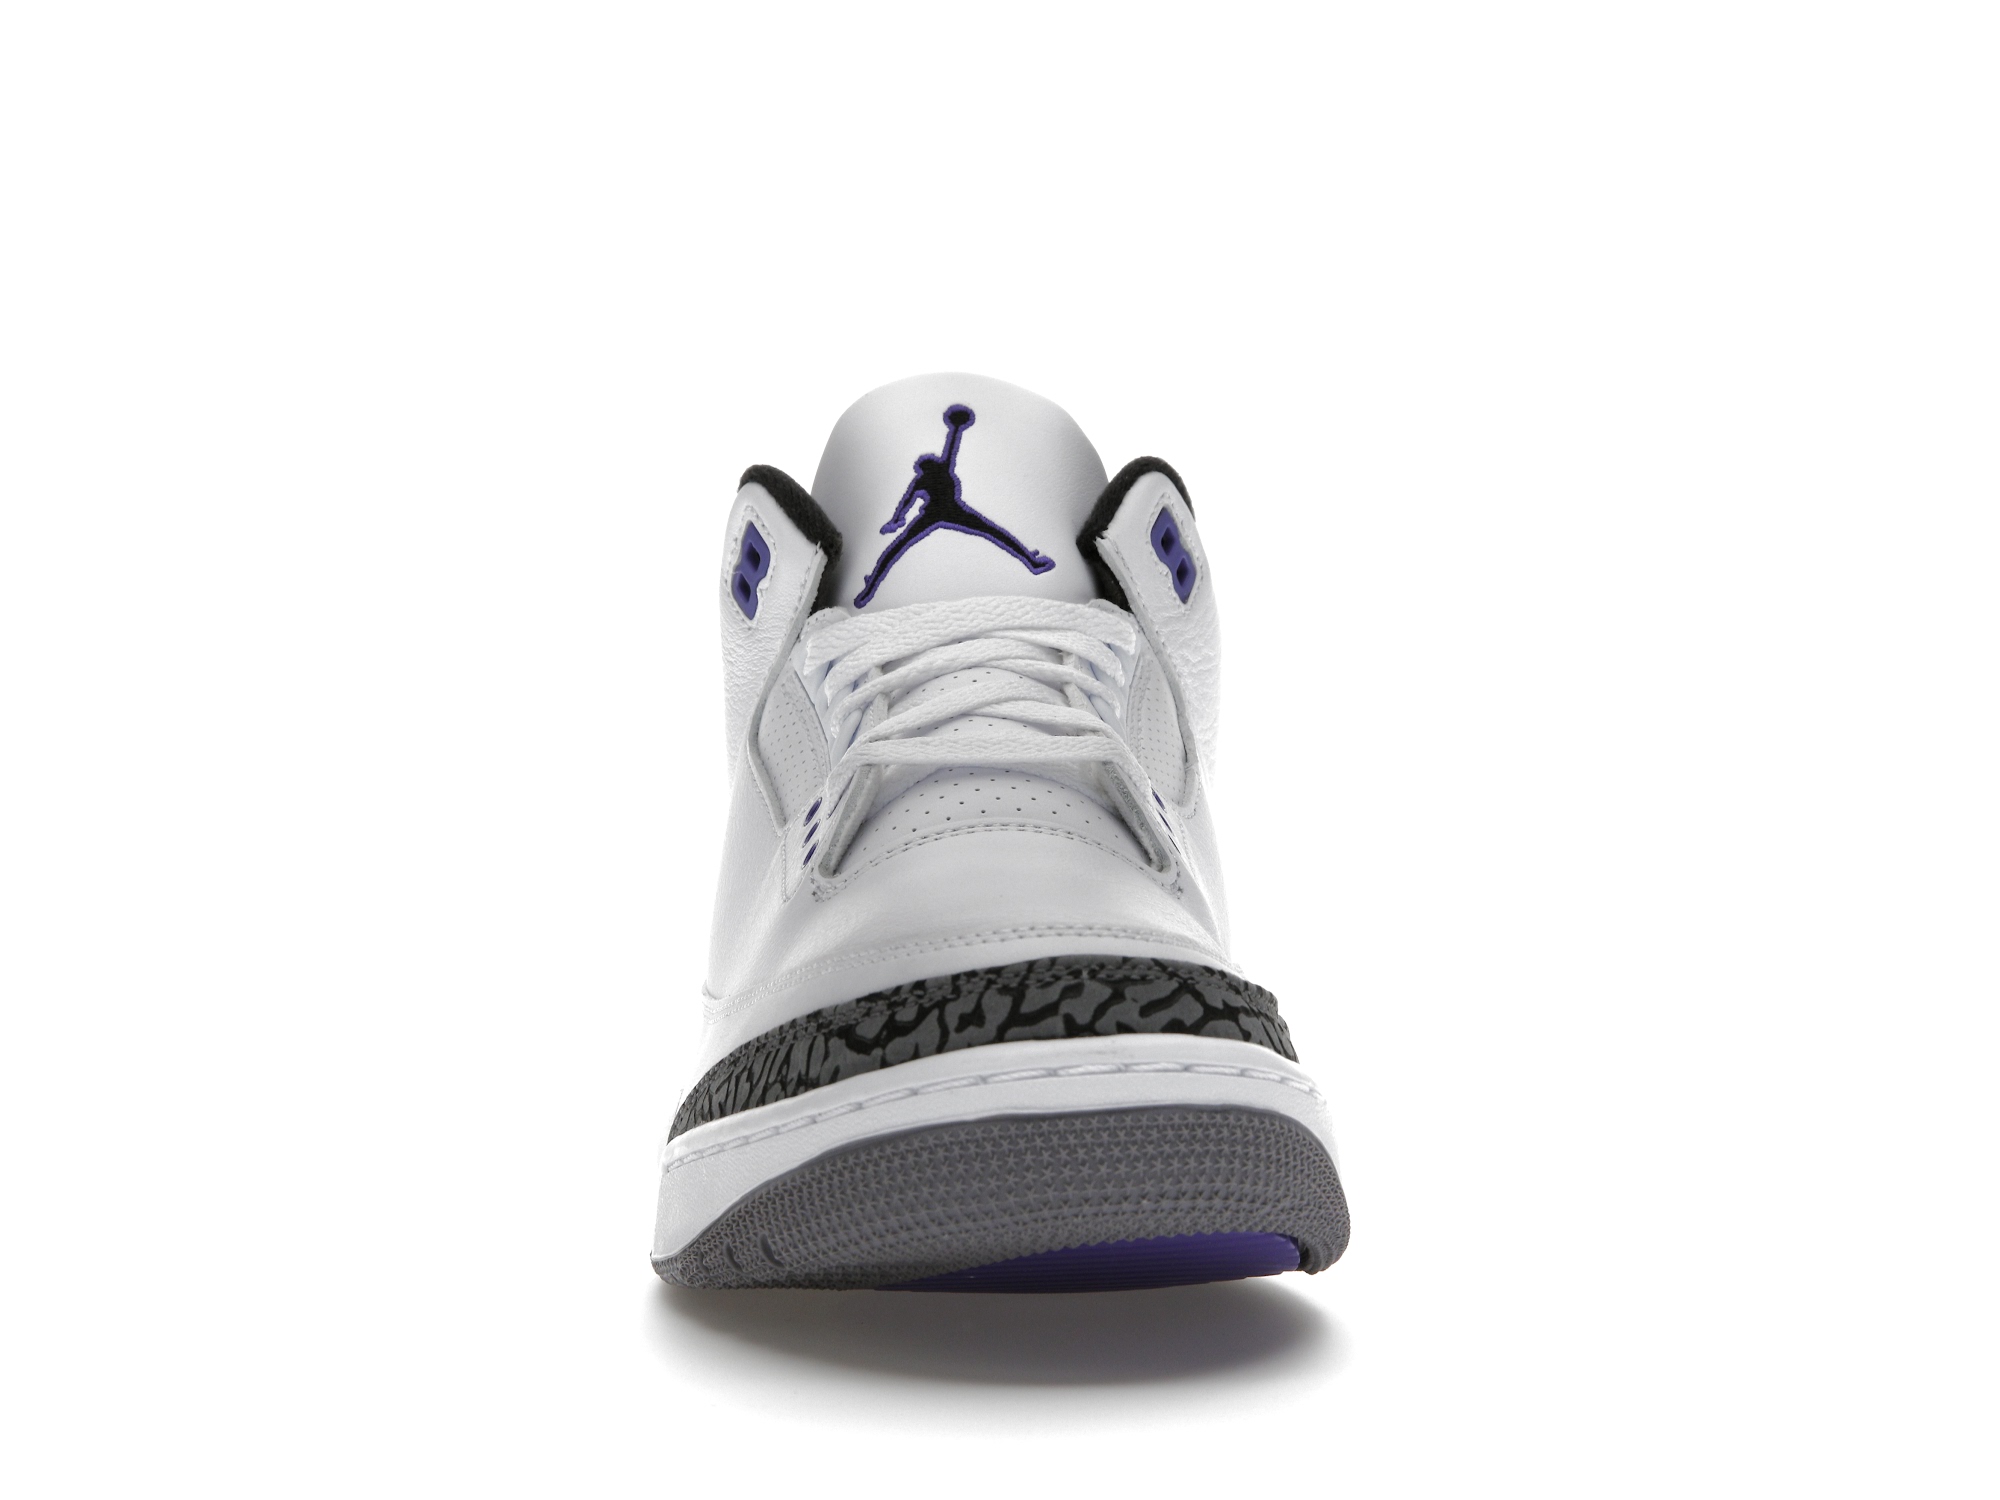 Skor för Air Jordan 3 Retro Dark Iris online | AirJordan.se